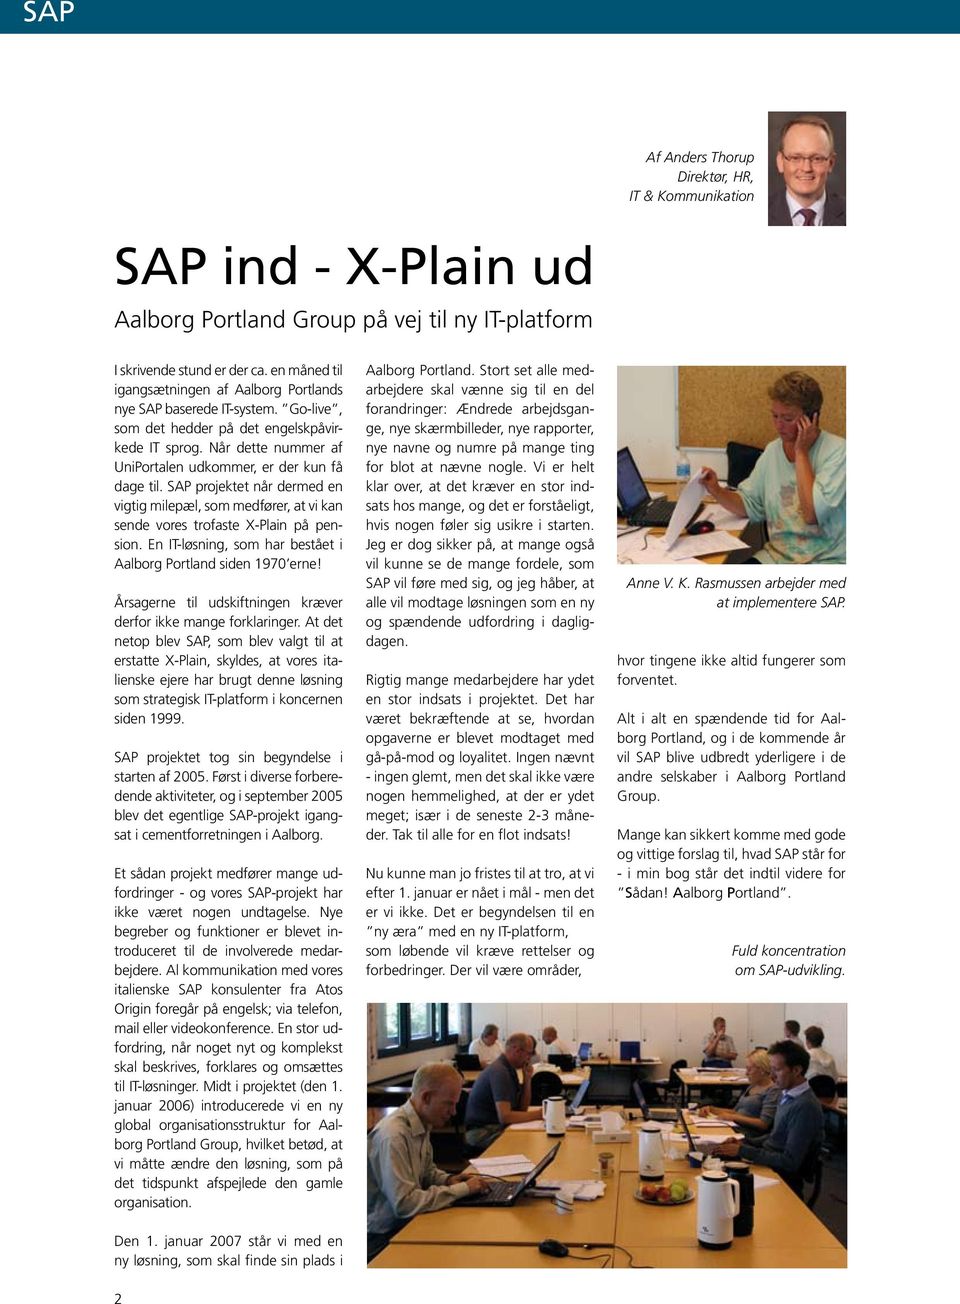 SAP projektet når dermed en vigtig milepæl, som medfører, at vi kan sende vores trofaste X-Plain på pension. En IT-løsning, som har bestået i Aalborg Portland siden 1970 erne!